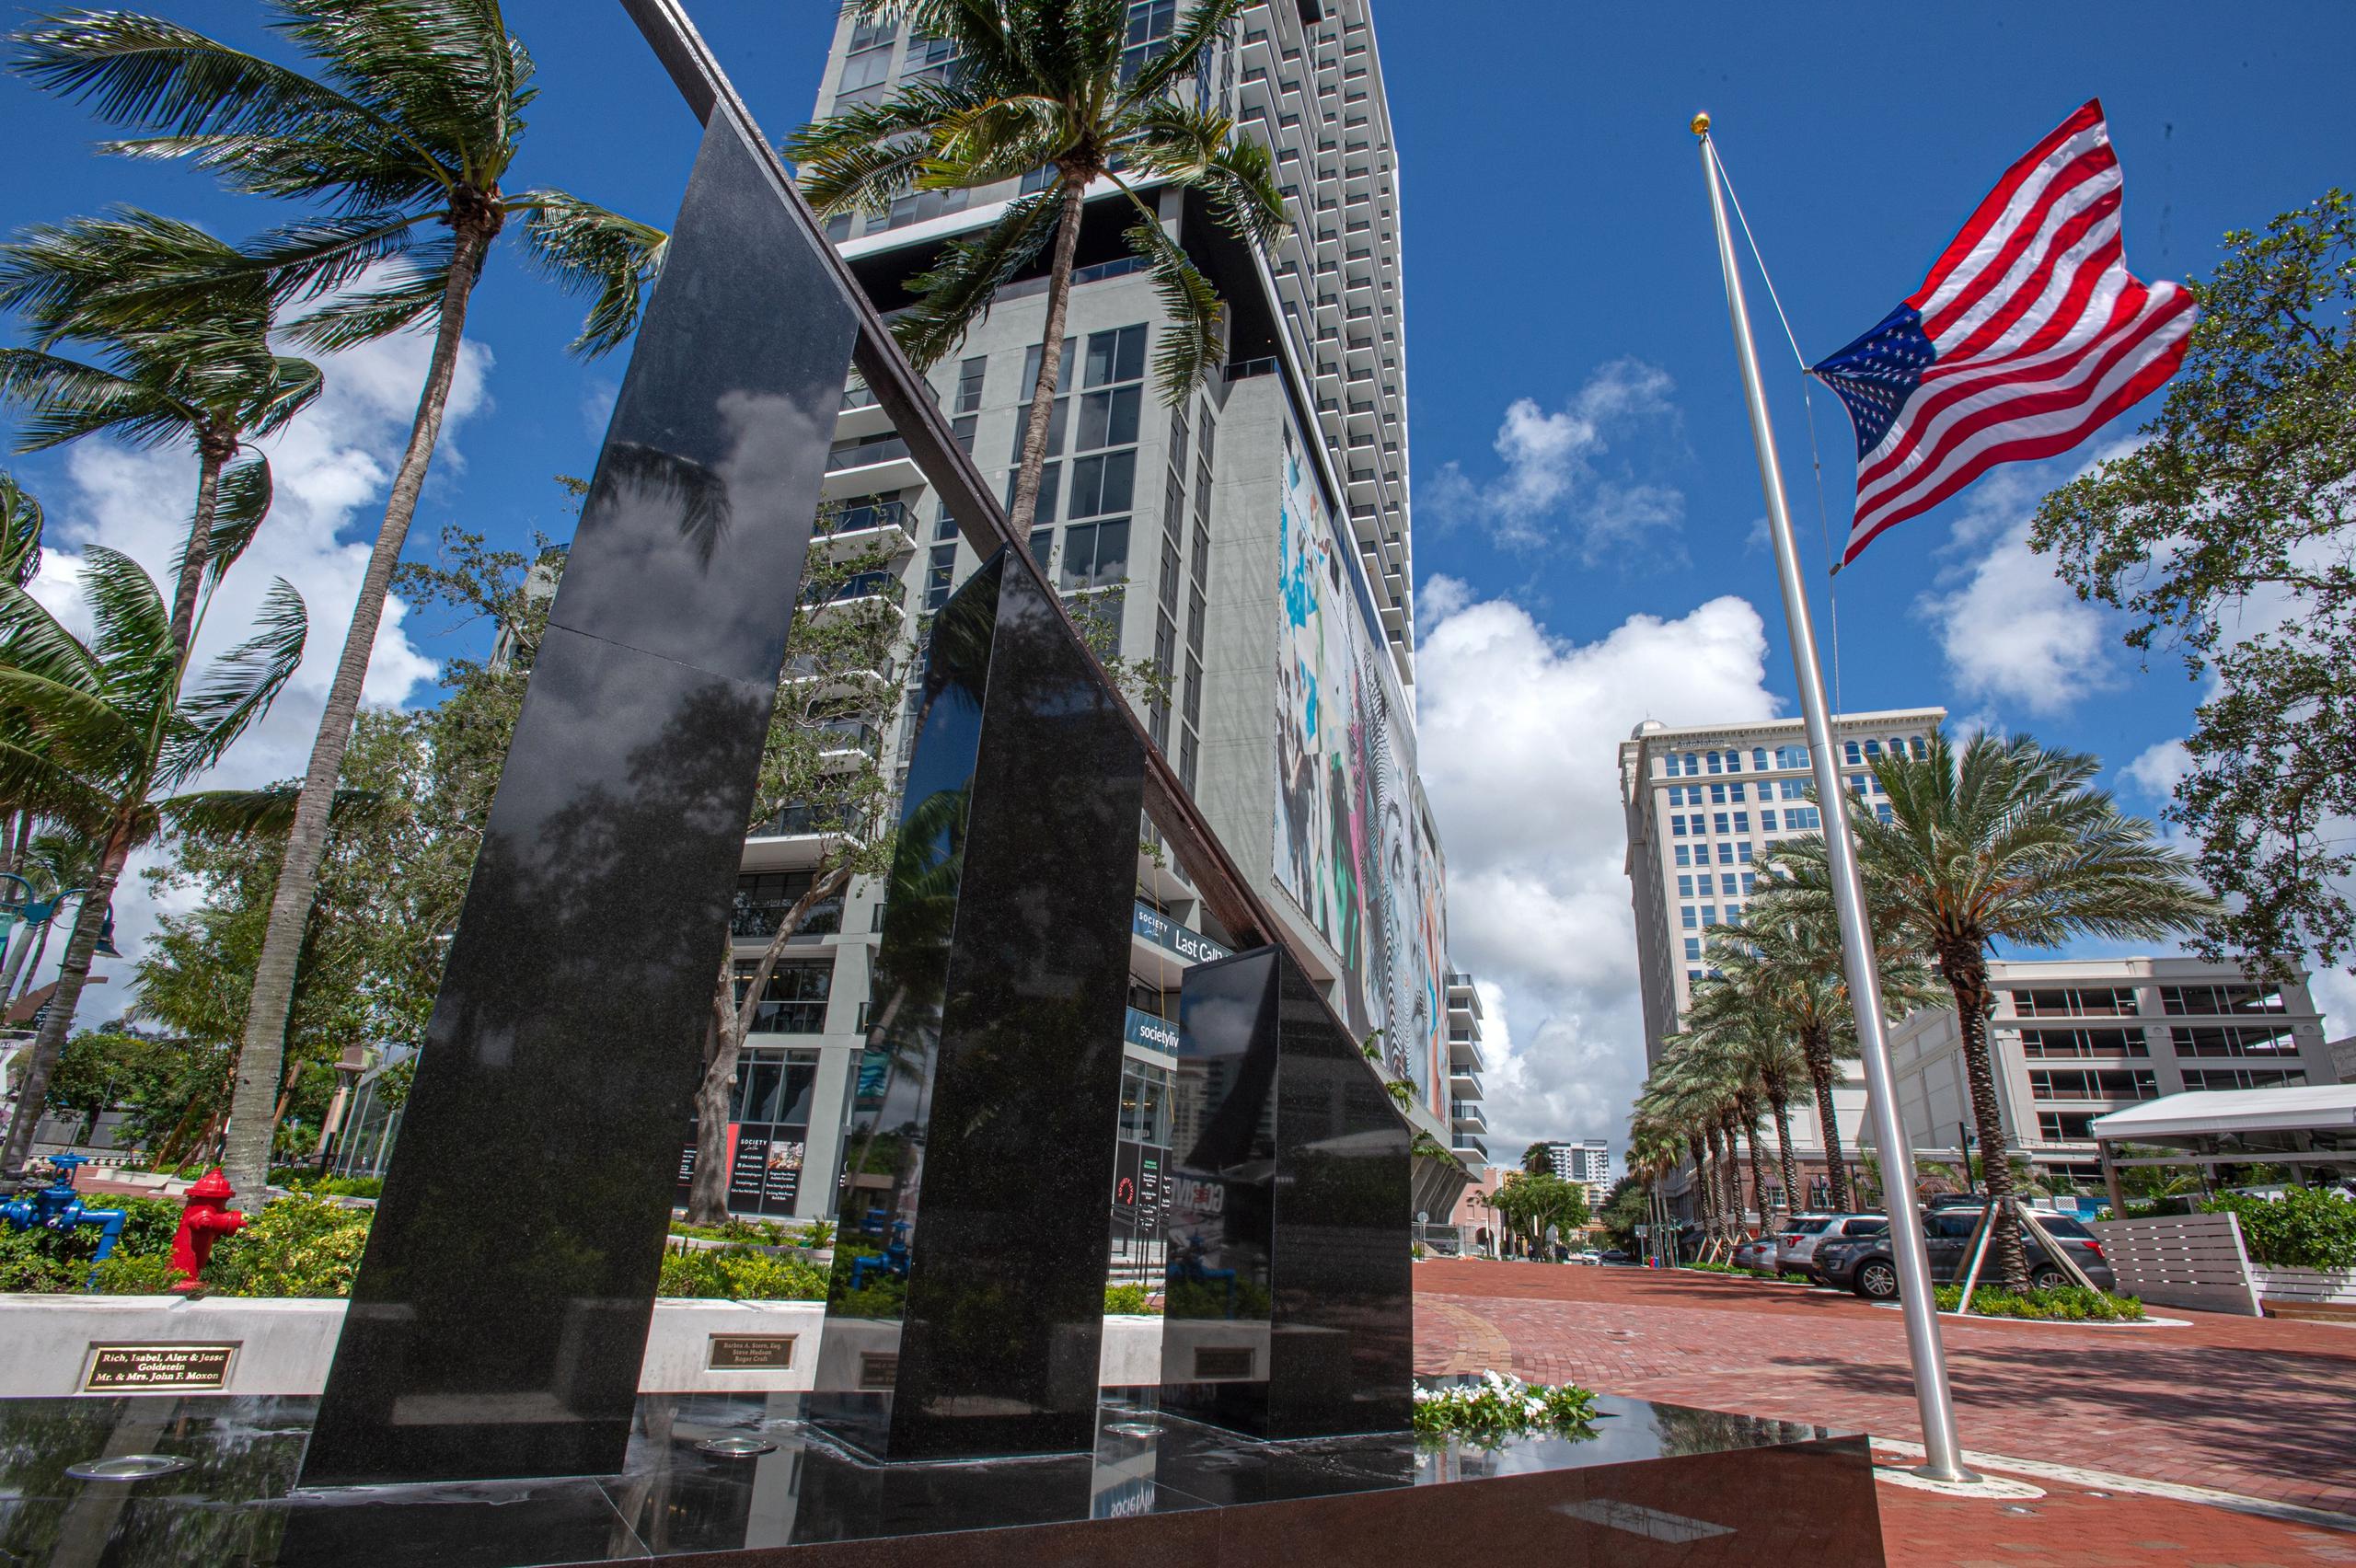 Vista del monumento realizado con un riel de una línea férrea sepultada por toneladas de escombros durante los atentados terroristas del 11 de Septiembre de 2001 en Nueva York, tras su inauguración hoy en el paseo de Riverwalk en Fort Lauderdale, Florida. (EFE)